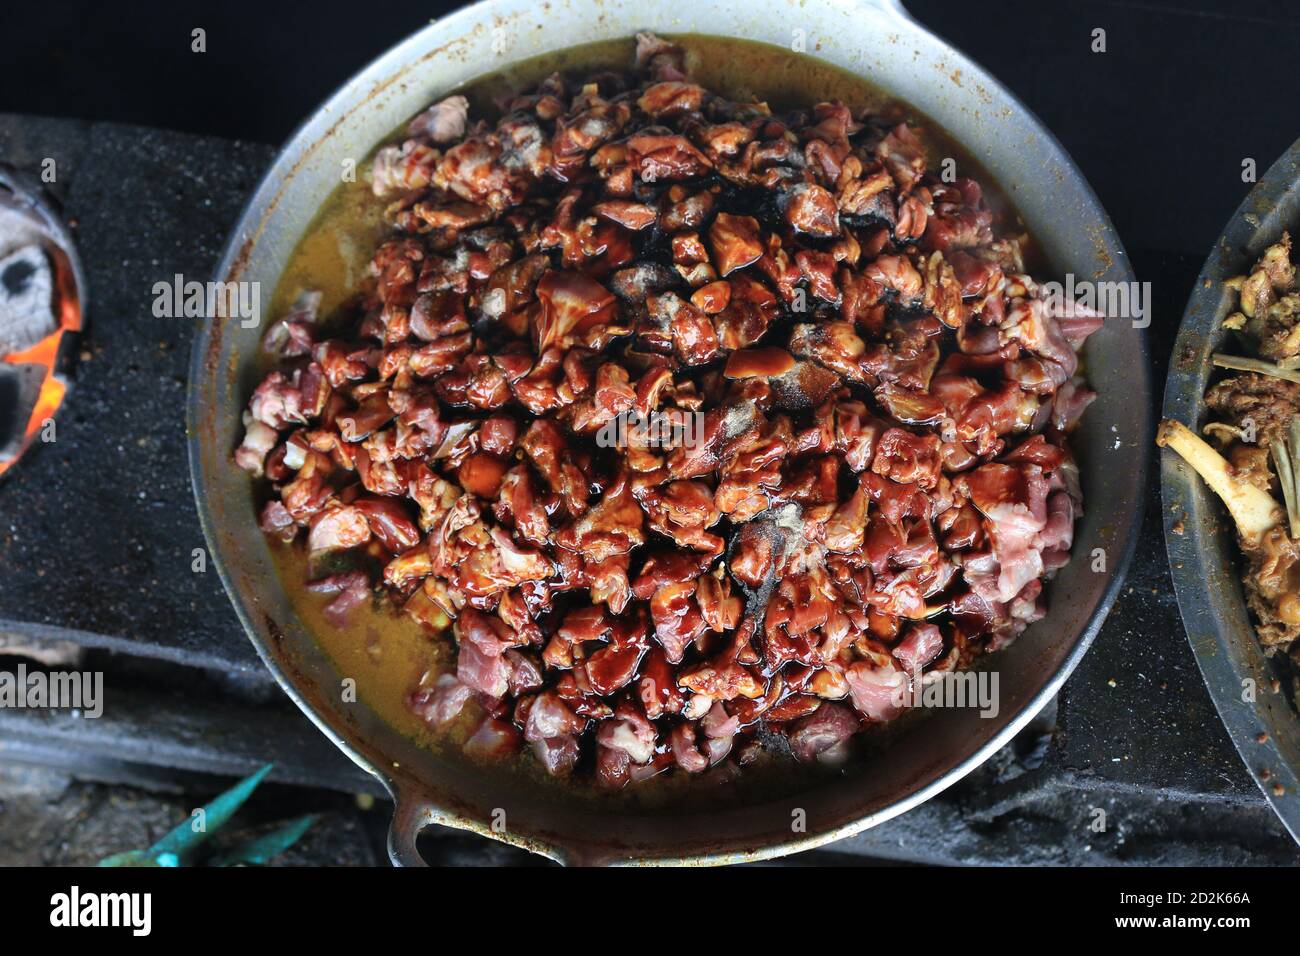 Der Prozess des Kochens Tongseng mit einem Herd in der Nähe, Tongseng ist traditionelle Lebensmittel aus Zentral-java indonesien. thera sind Tongseng Ziegenfleisch oder c Stockfoto